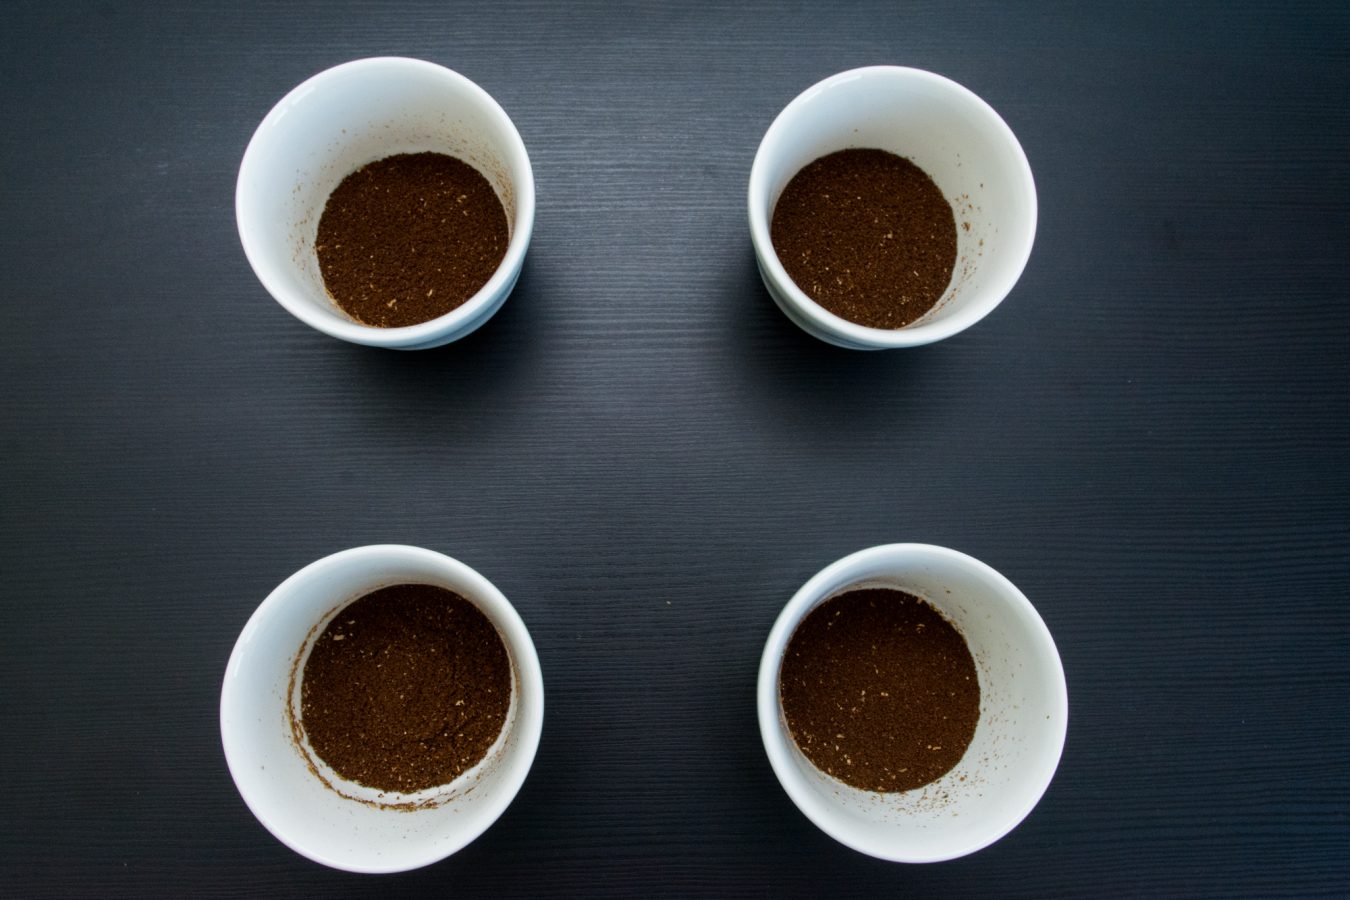 cupping - czarka do cuppingu - coffee plant